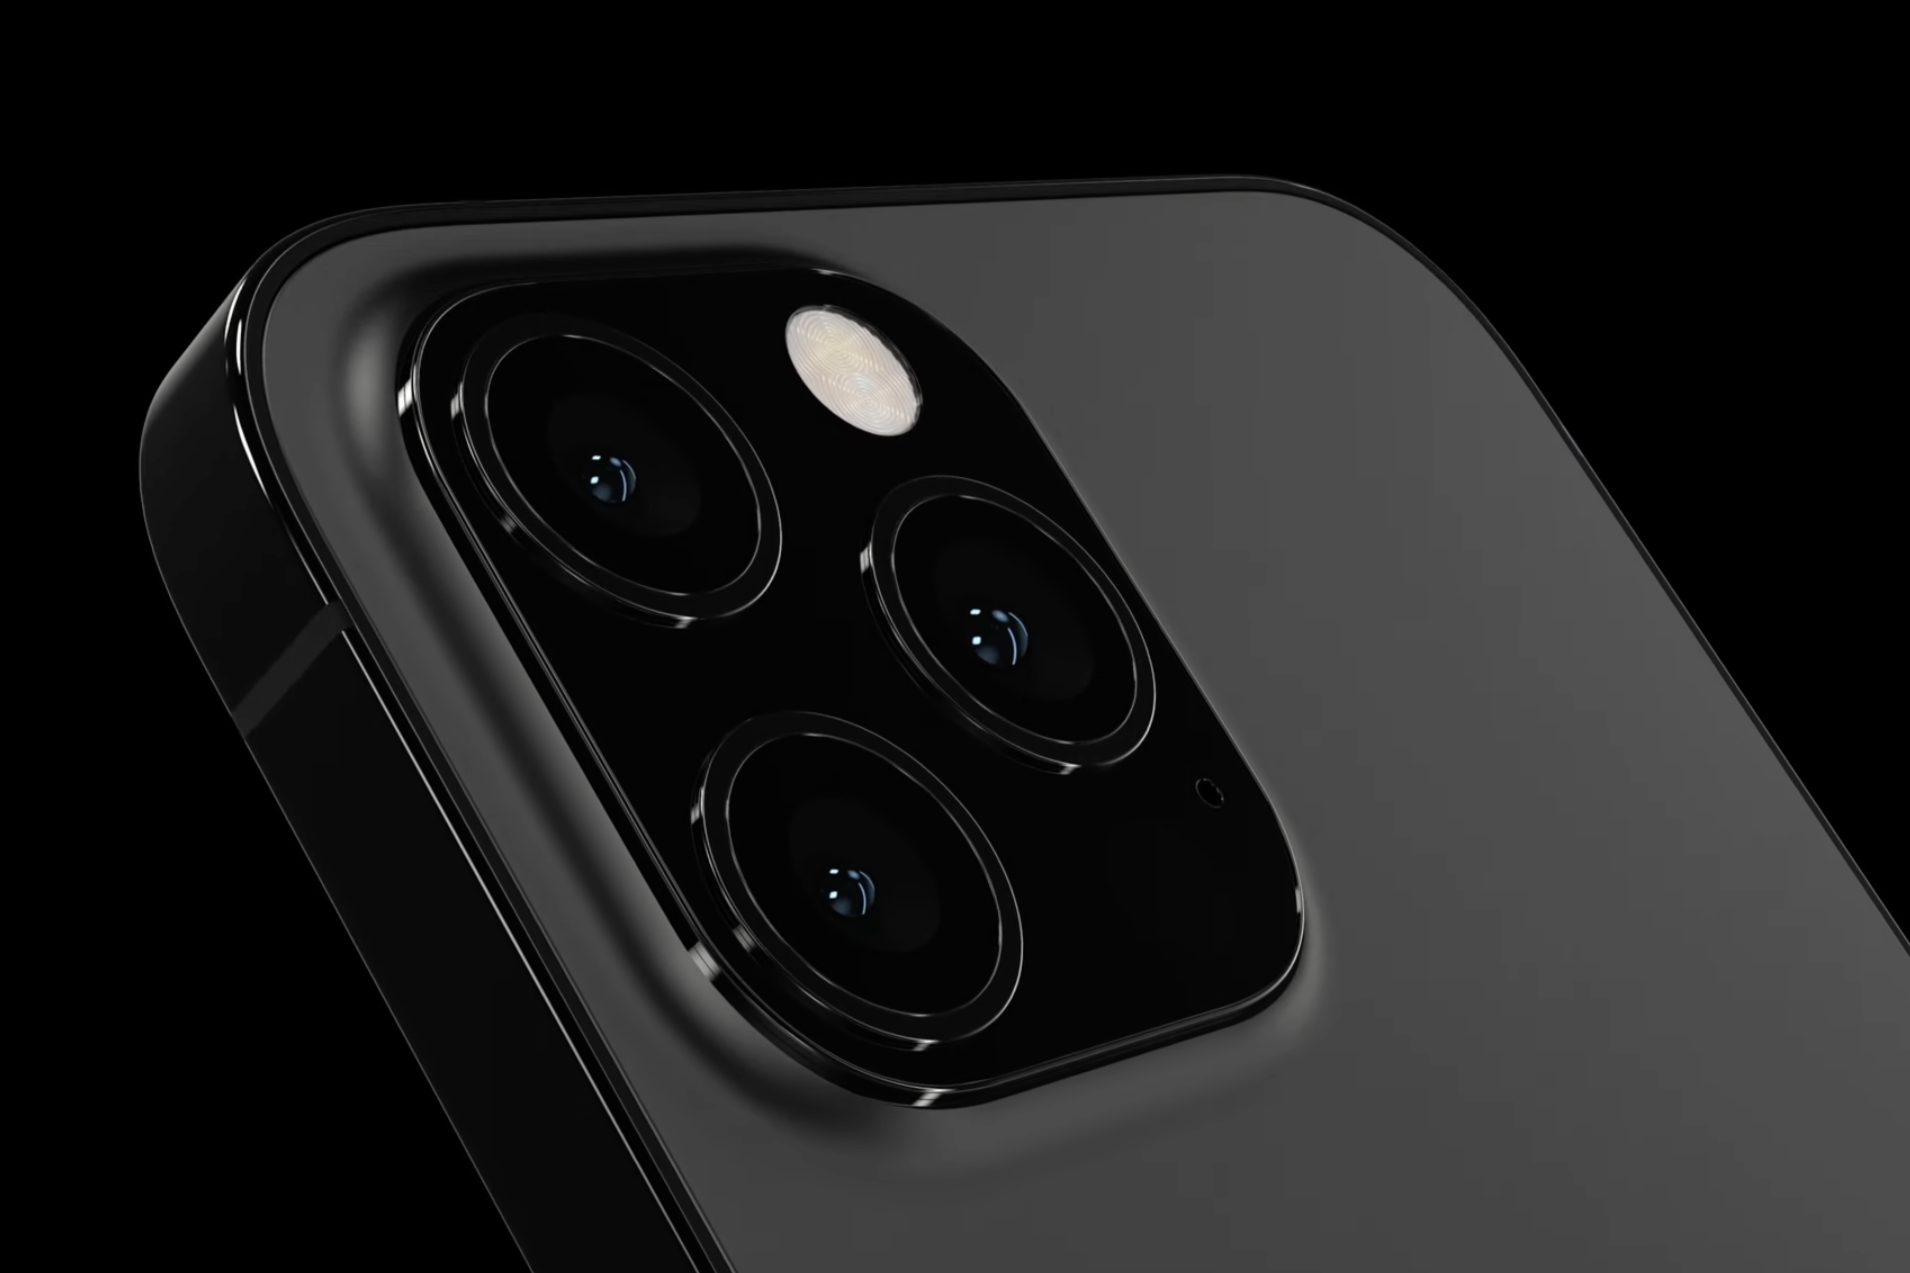 iPhone 13 Pro concept - New iPhone 13 Pro 5G report: matte black color, better Portrait mode, more